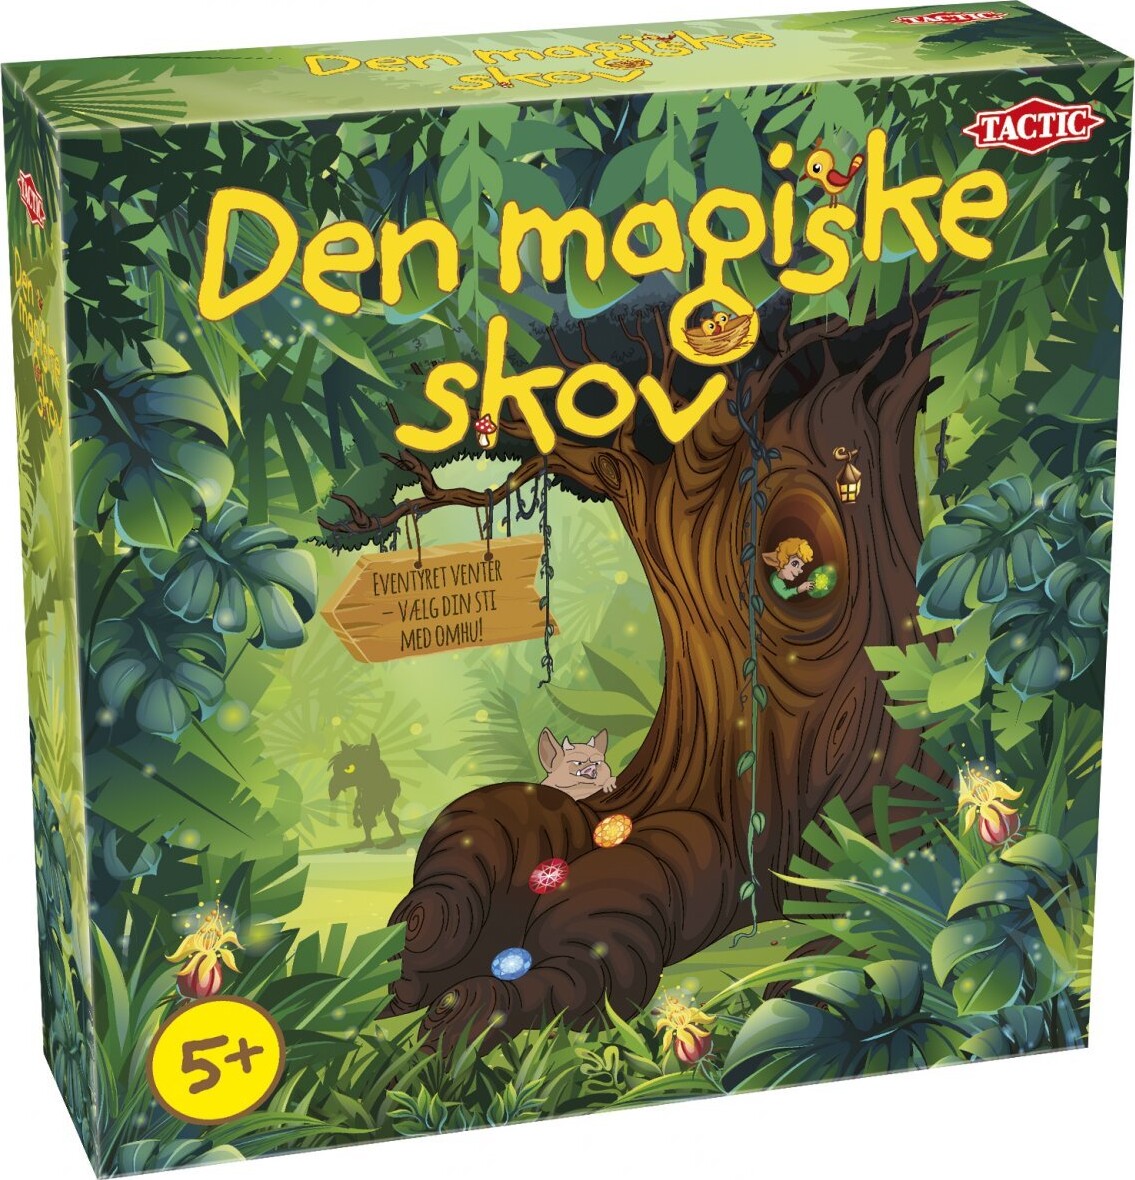 Billede af Den Magiske Skov Spil - Tactic - Dansk hos Gucca.dk